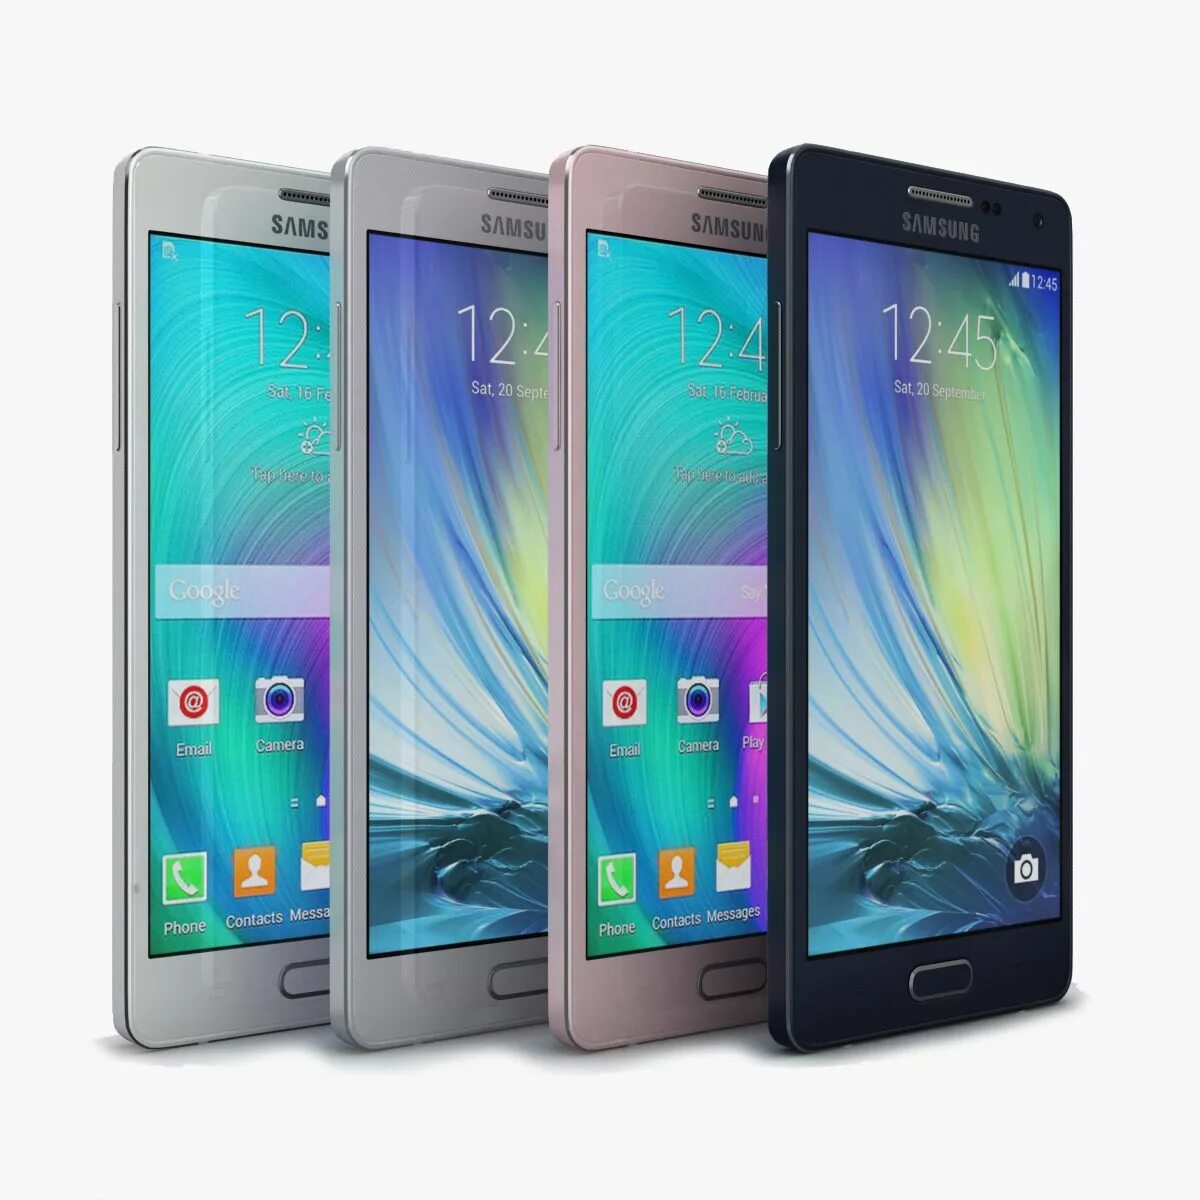 Samsung a05 4. Samsung SM-a500f. Samsung a5 SM-a500f. Samsung Galaxy a5 a500f. Samsung модель Galaxy a5 SM a500f.